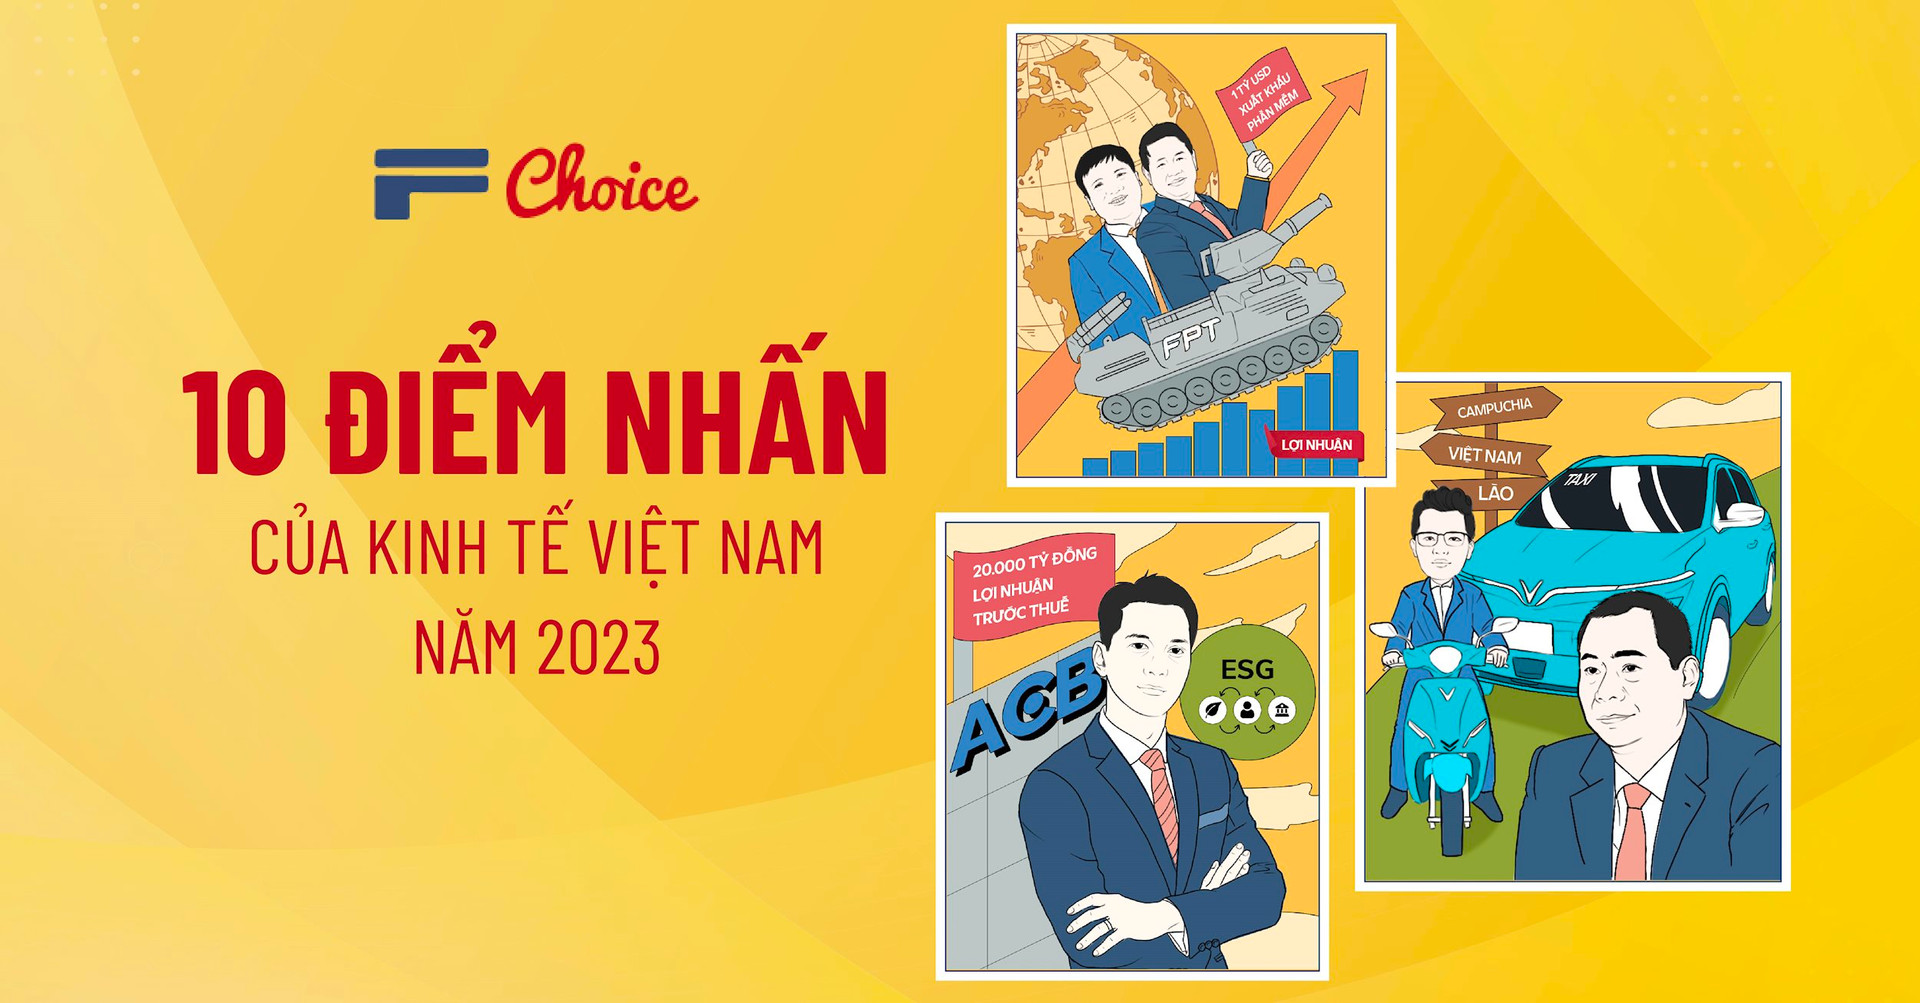 Nghệ An, FPT, ACB, VinFast, VPBank, NIC, sầu riêng, bán dẫn… vào danh sách 10 điểm nhấn của kinh tế Việt Nam năm 2023 - Ảnh 1.